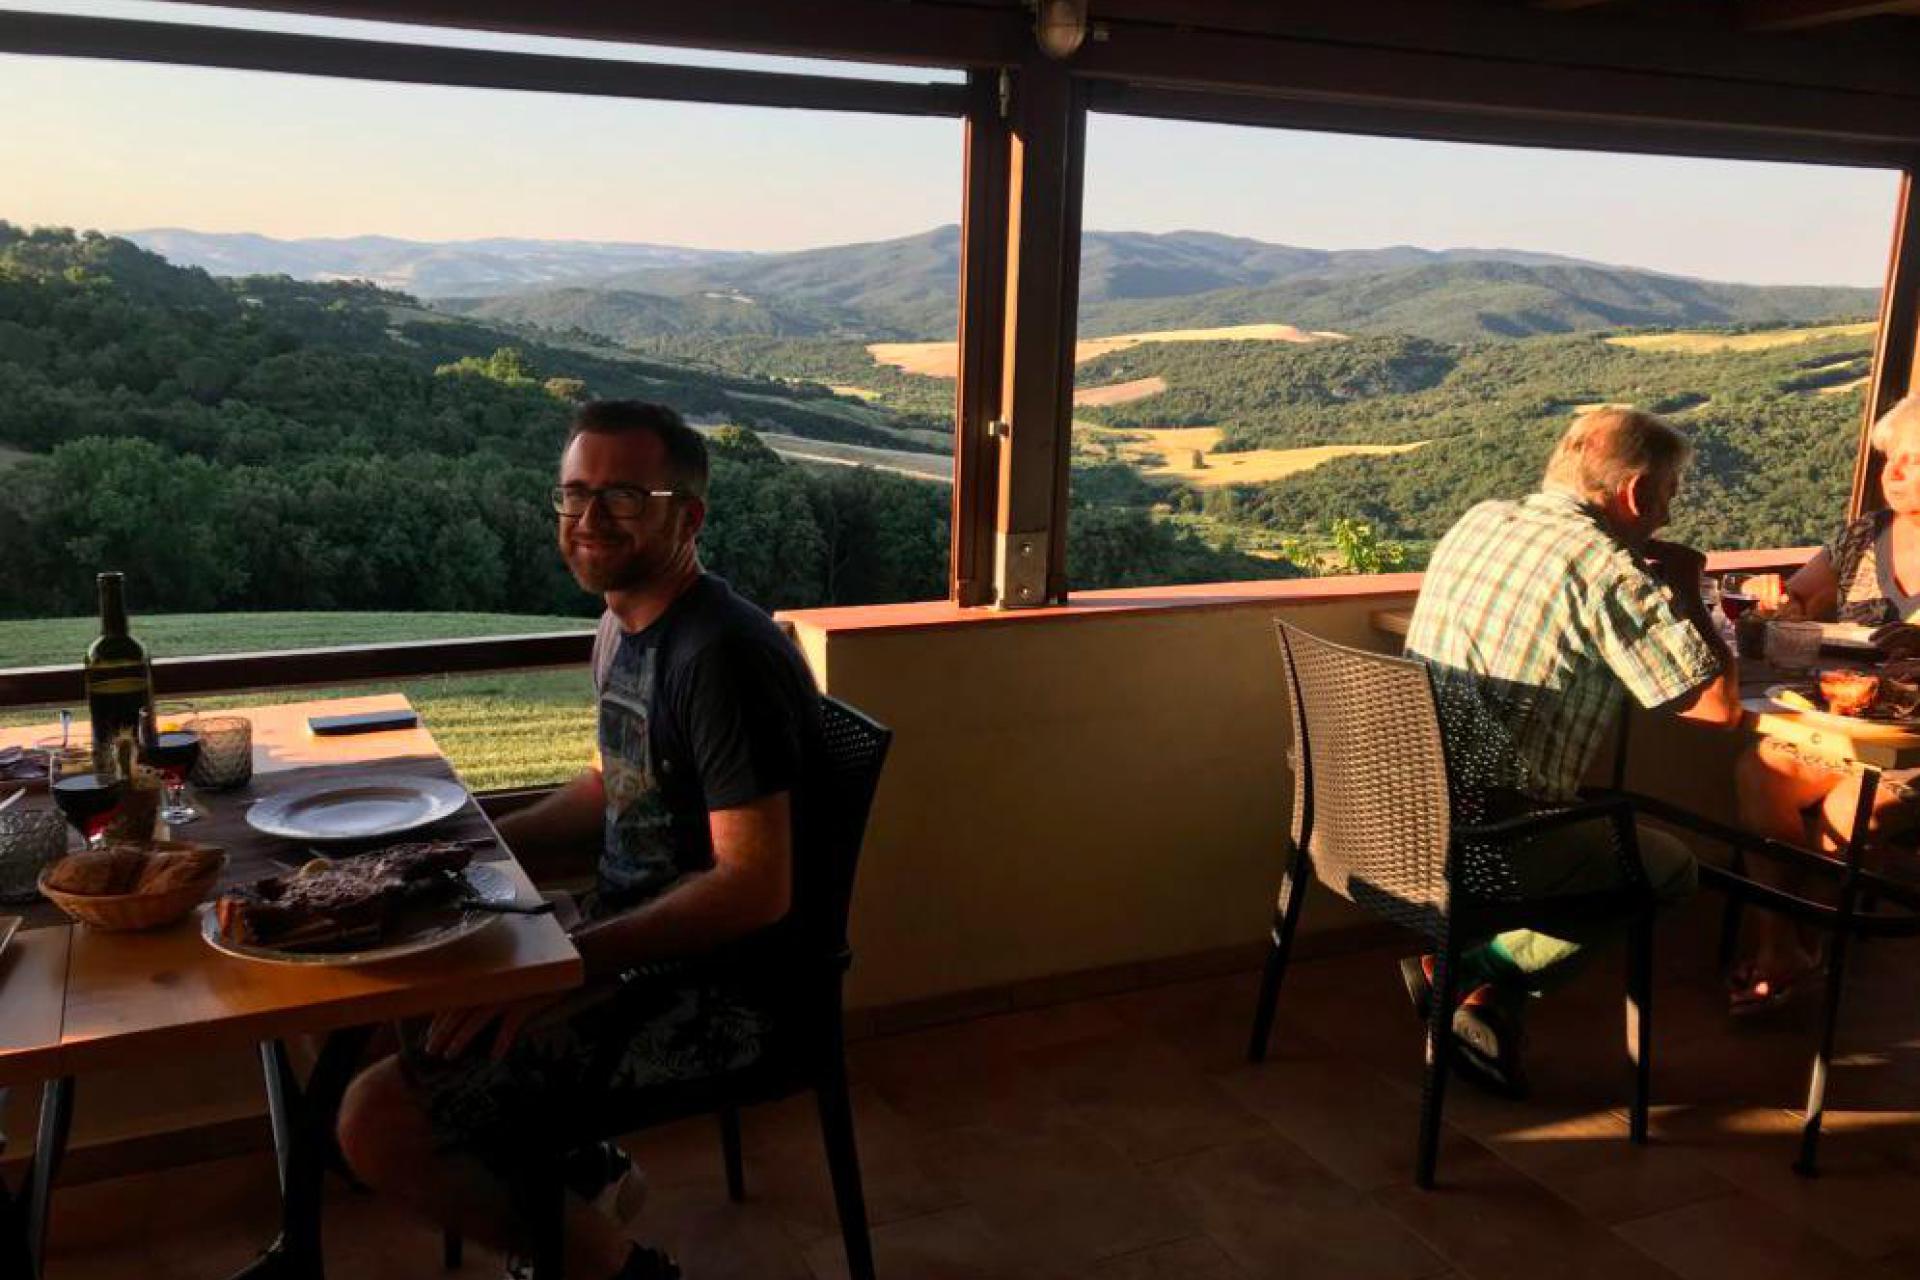 Agriturismo Toscane Familievriendelijke agriturismo met rustige ligging in Toscane